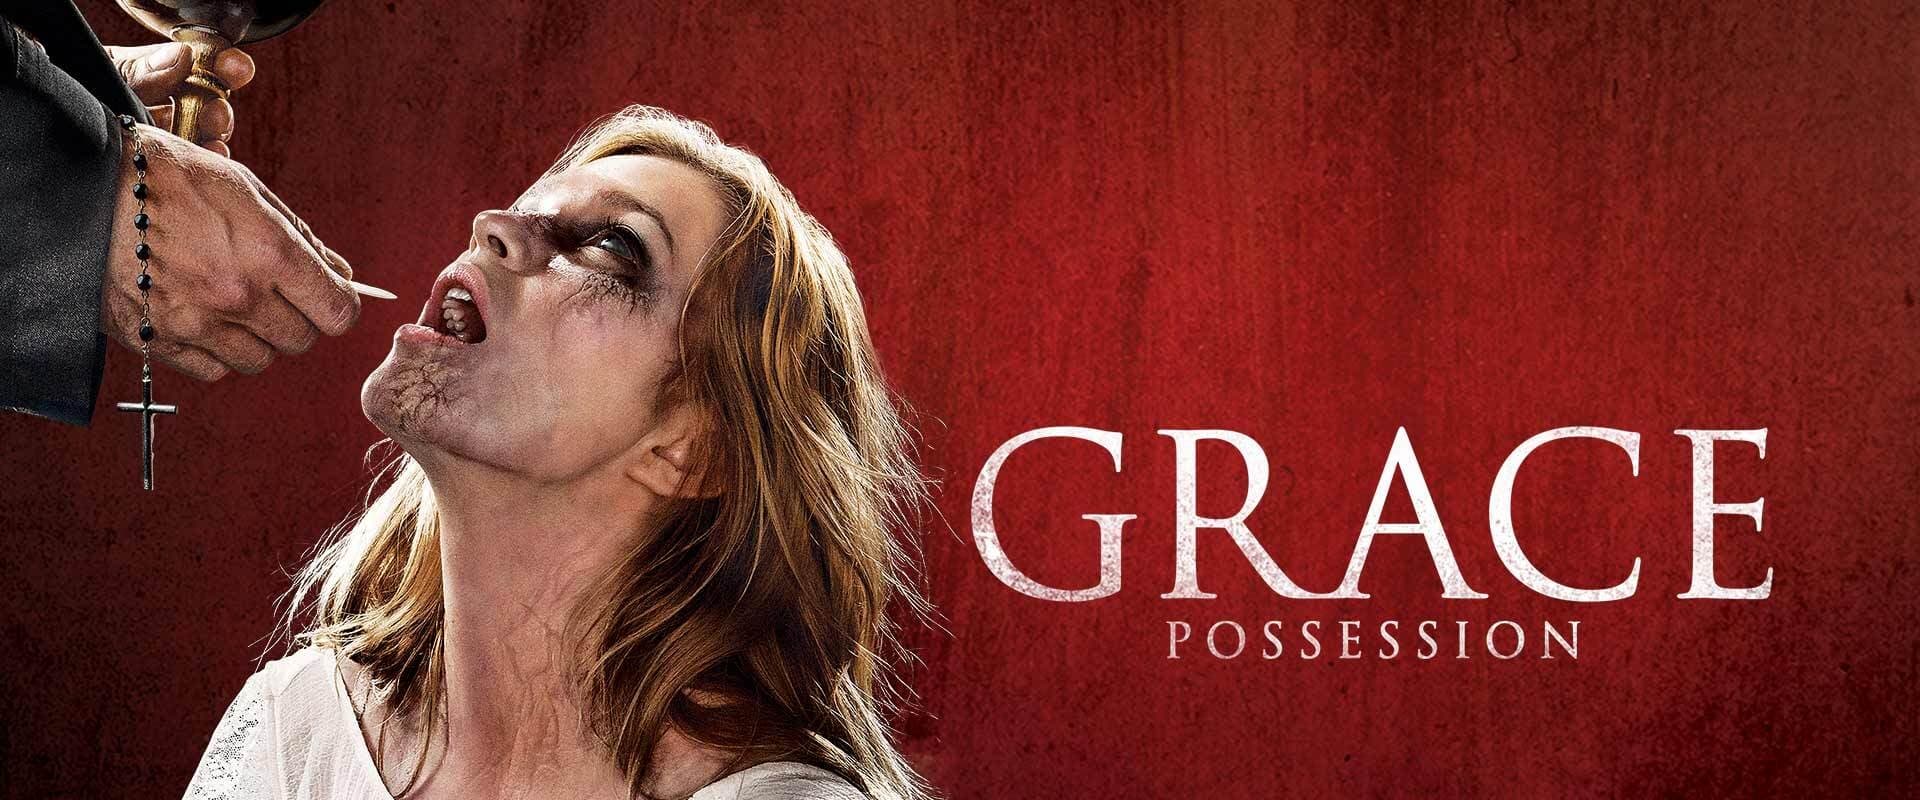 La posesión de Grace